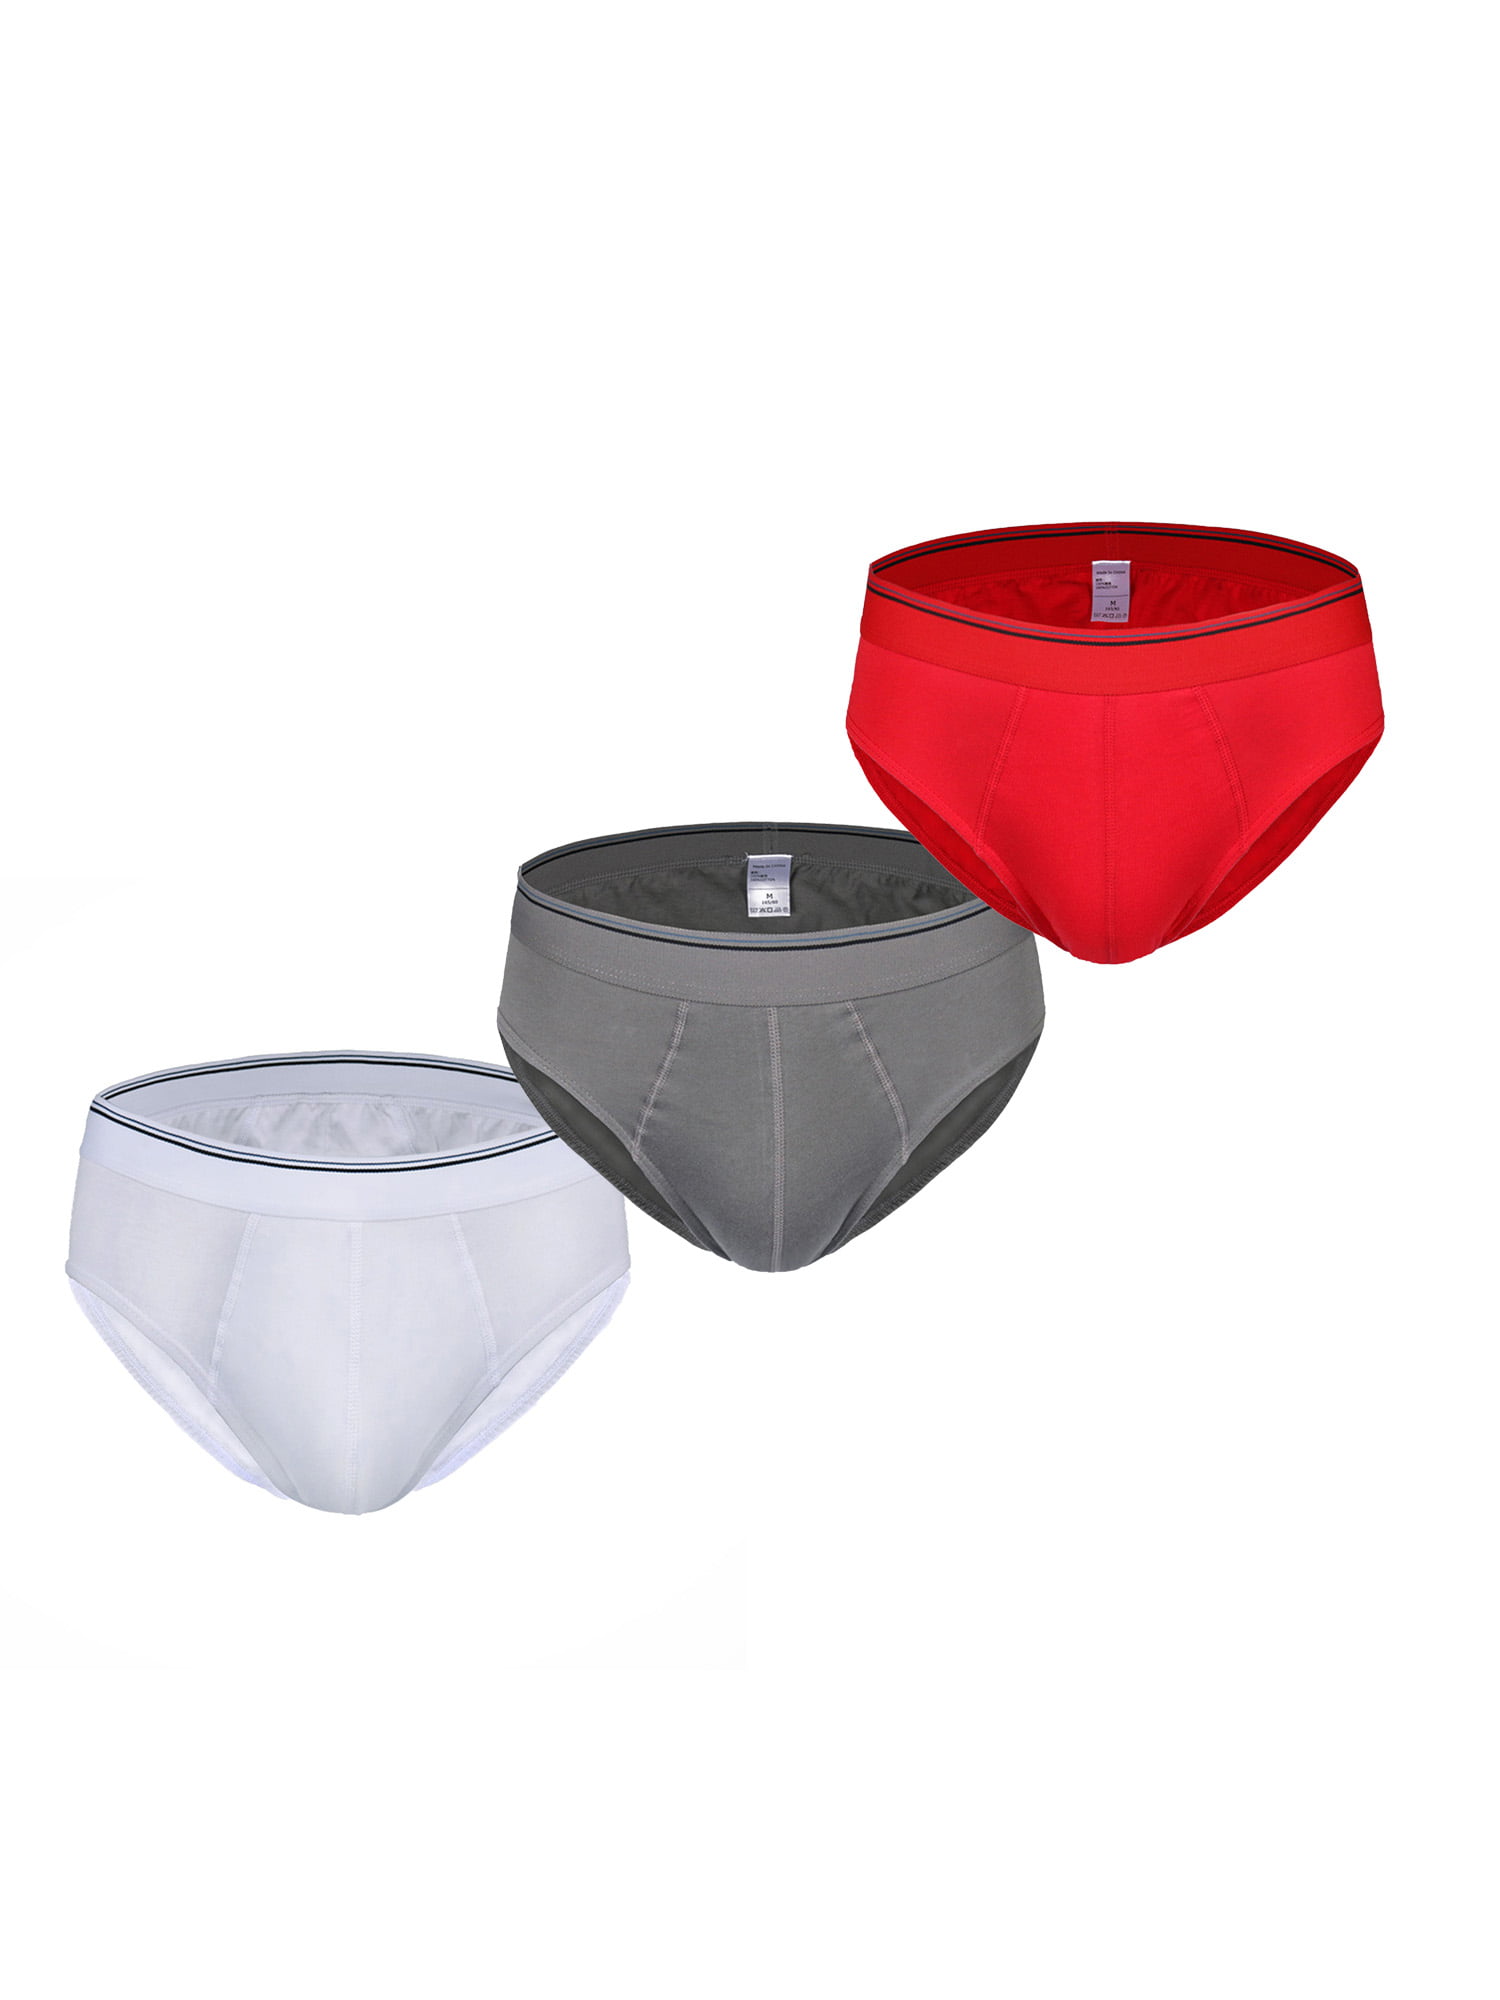 Mens underwear cotton U convex design solid color Tongle pants,2pcs,3pcs,4pcs,5pcs,